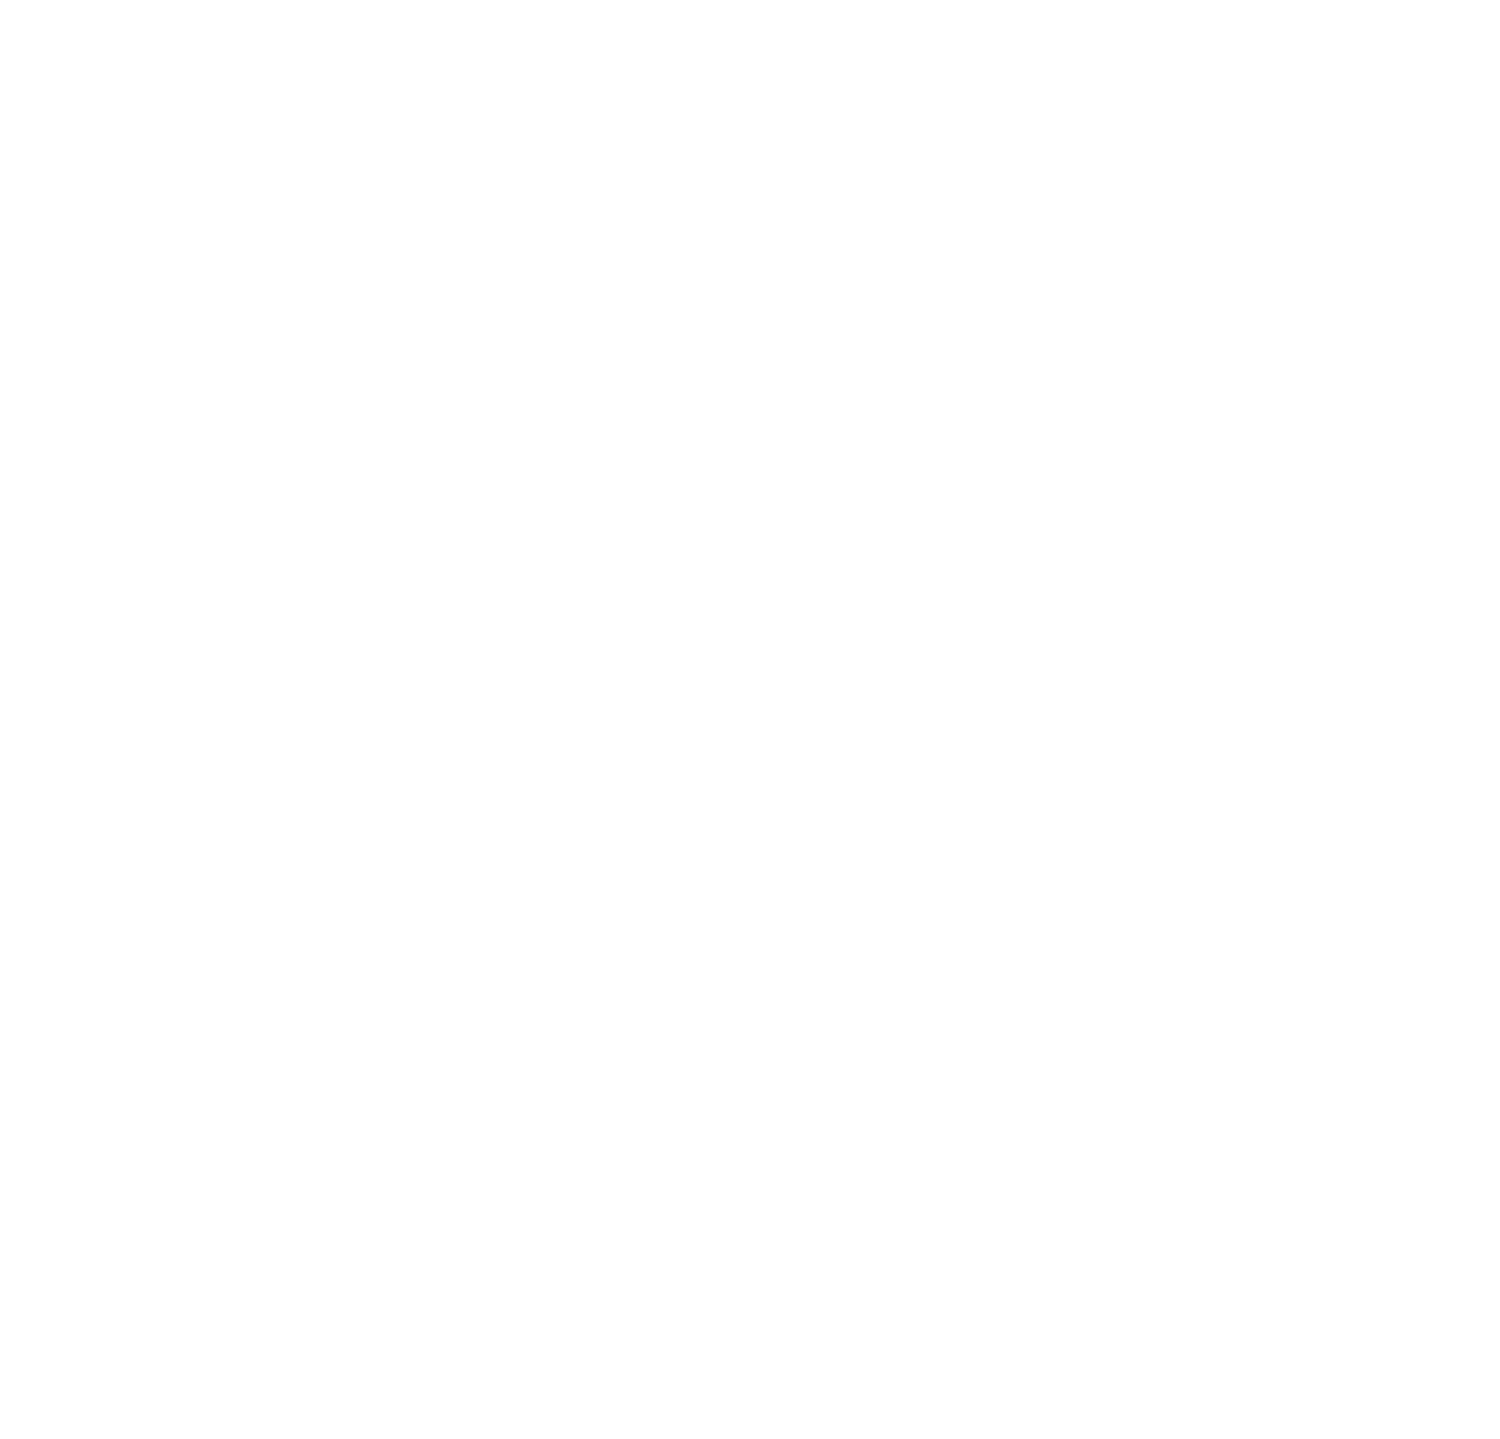 smART KINSTON CITY PROJECT FOUNDATION